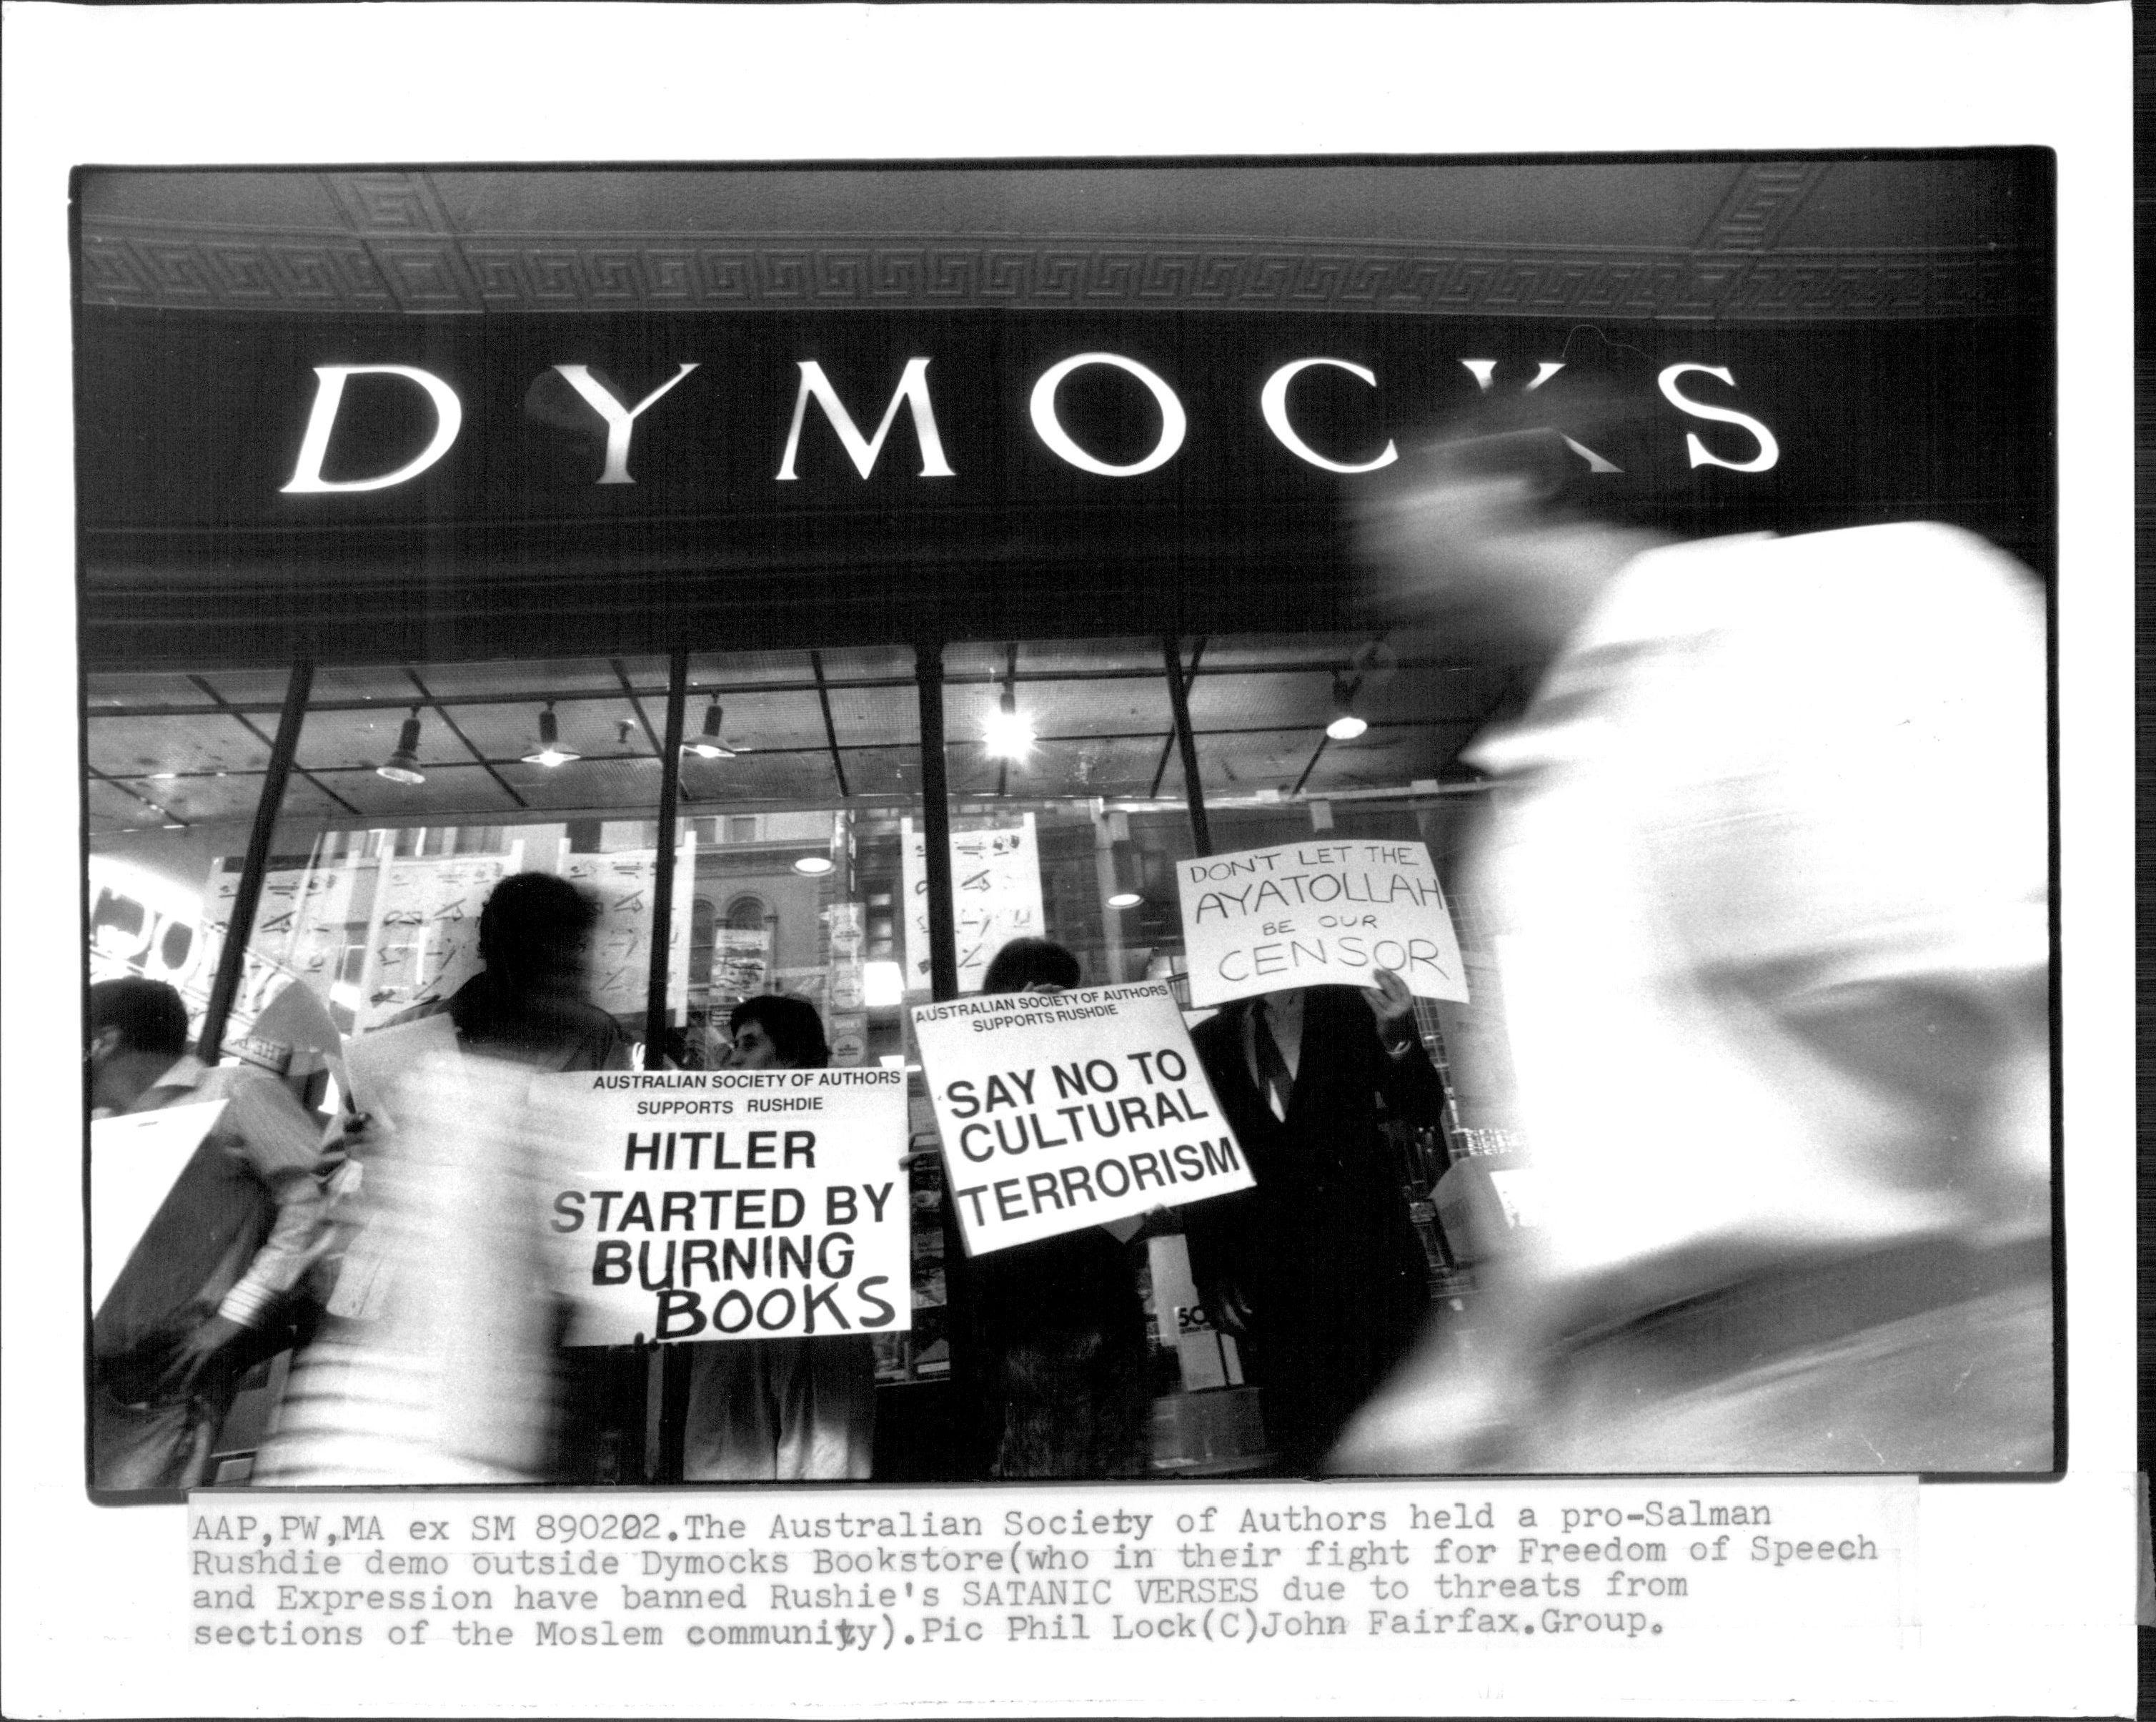 La Sociedad Australiana de Autores realizó una demostración a favor de Salman Rushdie frente a la librería Dymocks (quienes en su lucha por la libertad de expresión y expresión han prohibido los versos satánicos de Rushdie debido a las amenazas de sectores de la comunidad musulmana). 2 de febrero de 1989.